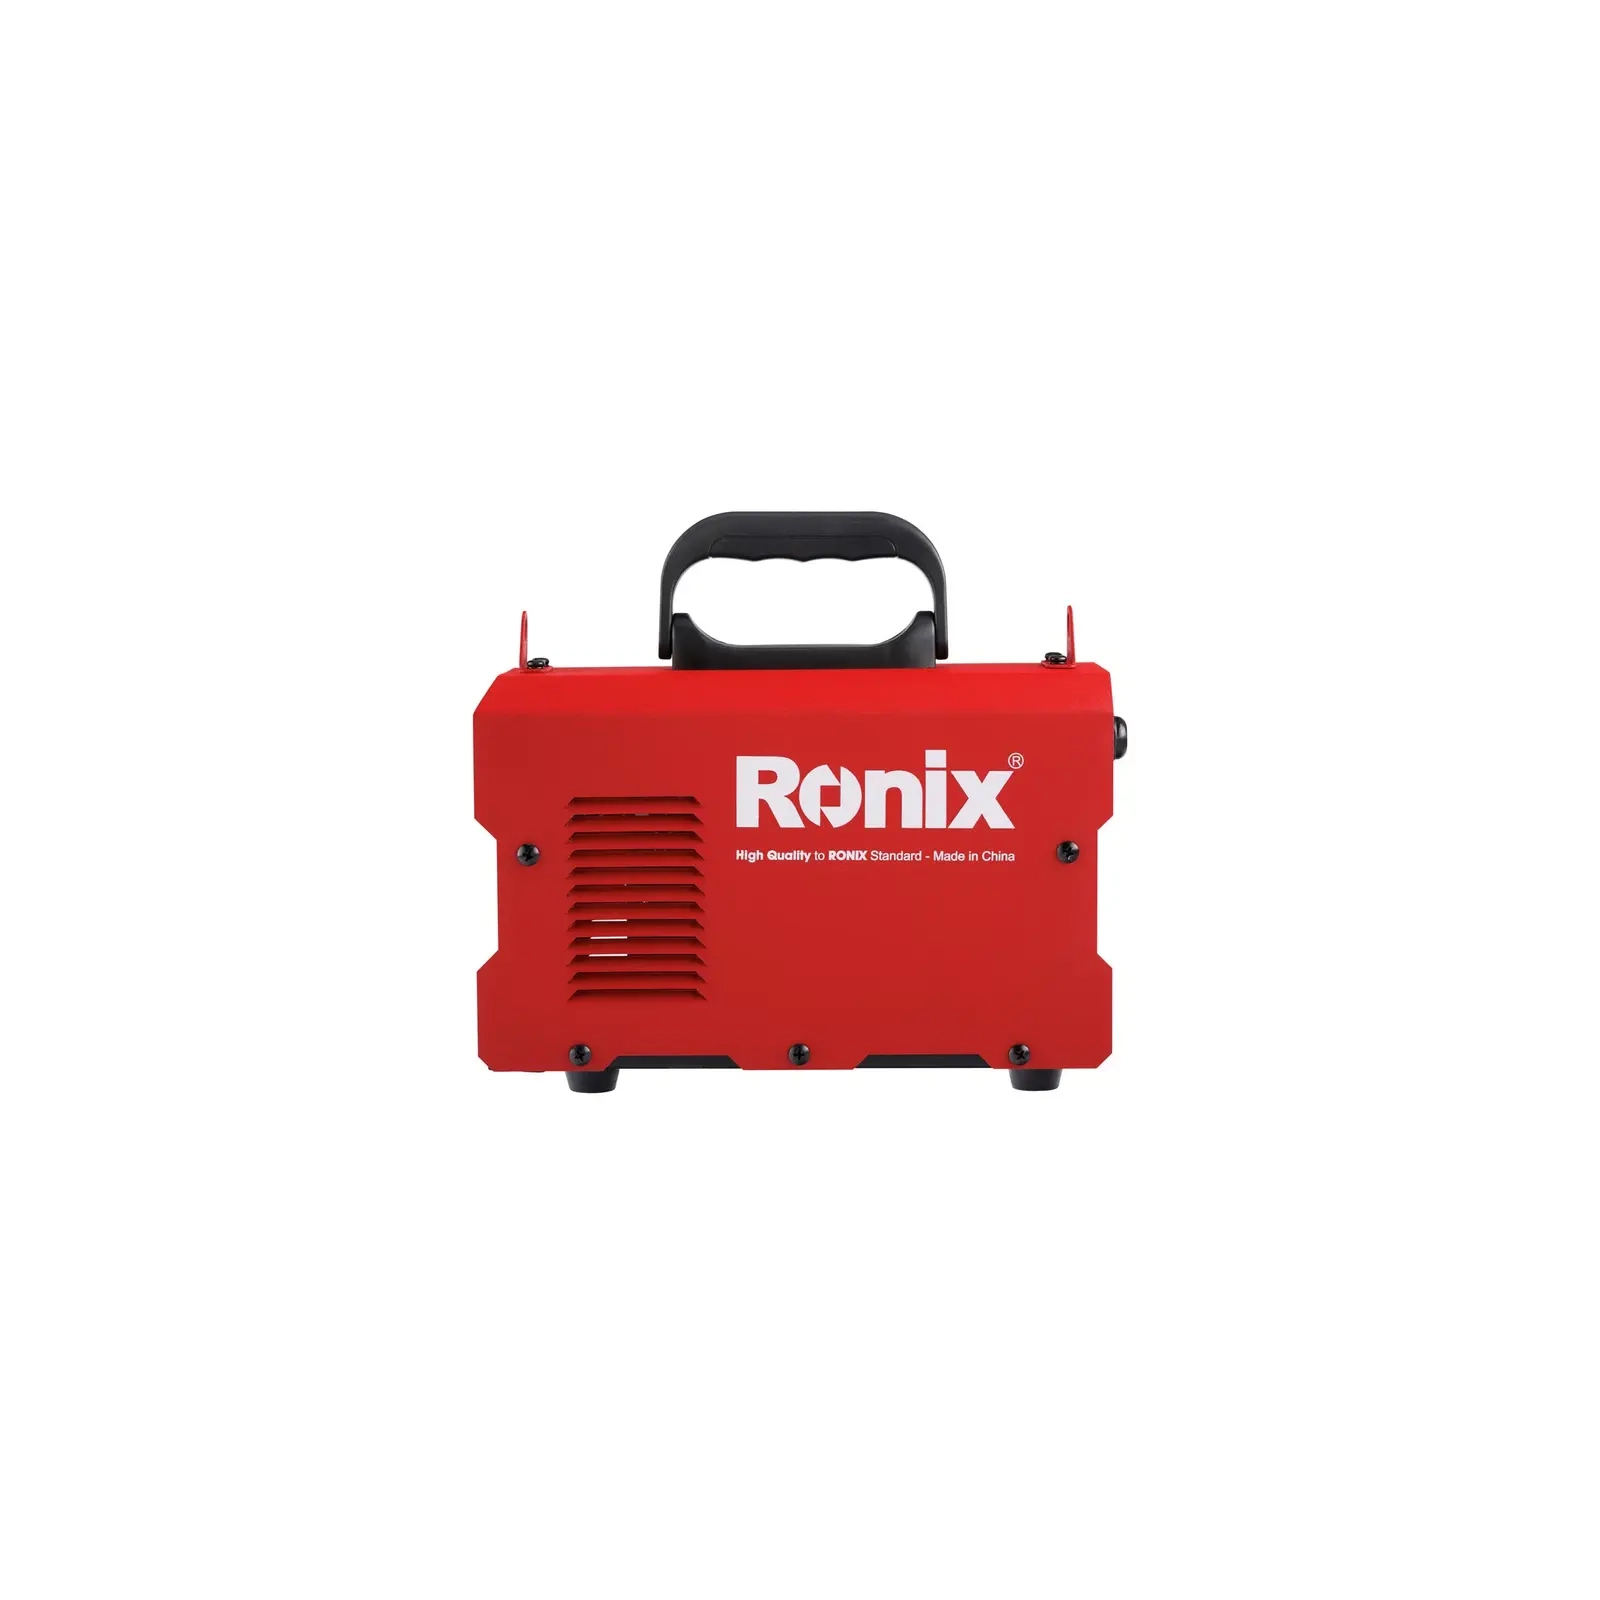 Зварювальний апарат Ronix 180А (RH-4603) зображення 2